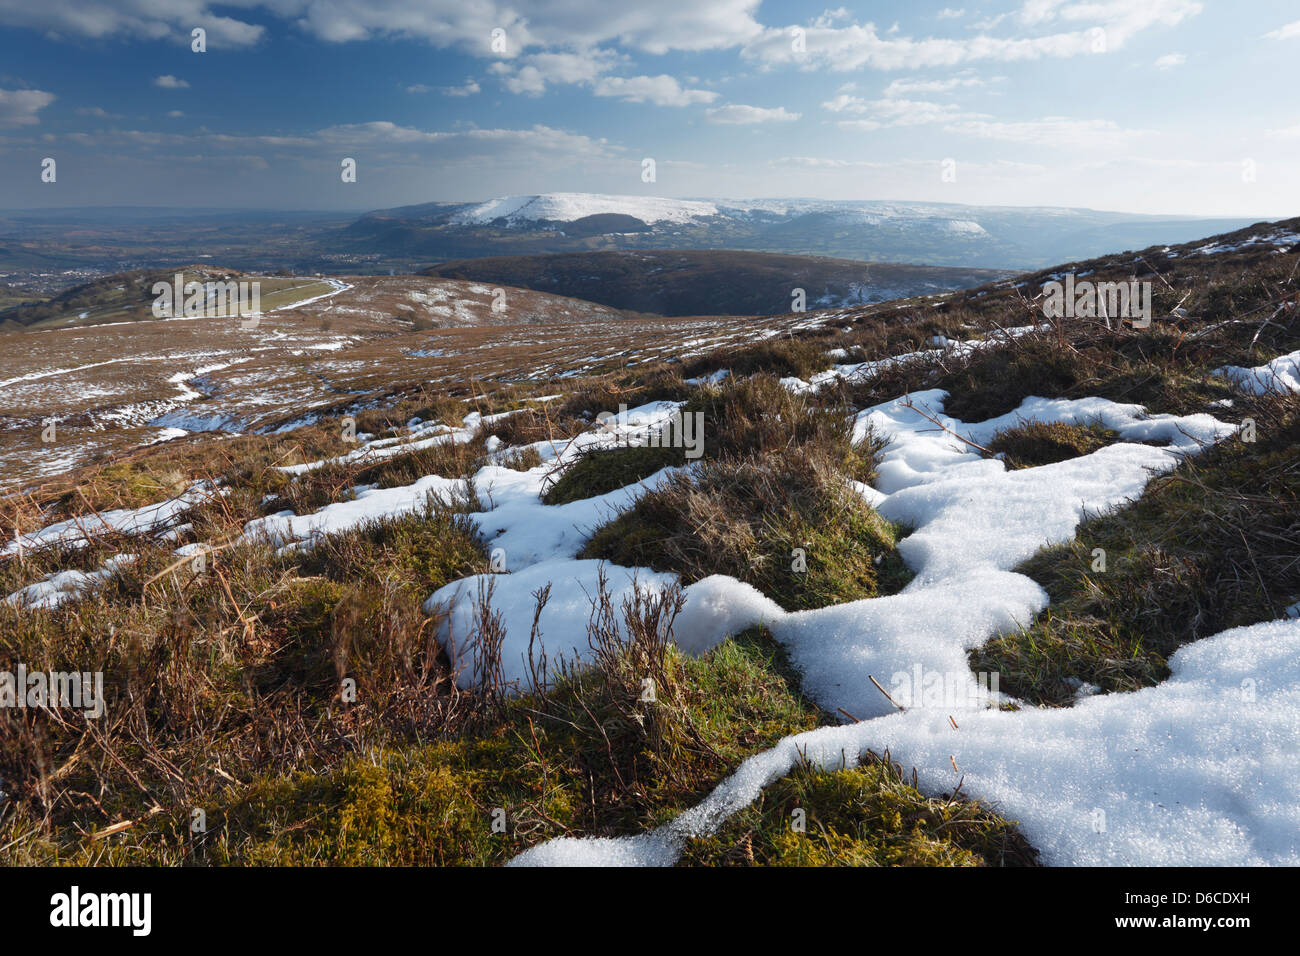 Plaques de fonte de neige, sur les pentes du mont du Pain de Sucre. Près d'Abergavenny. Le Parc National des Brecon Beacons. Pays de Galles, Royaume-Uni. Banque D'Images